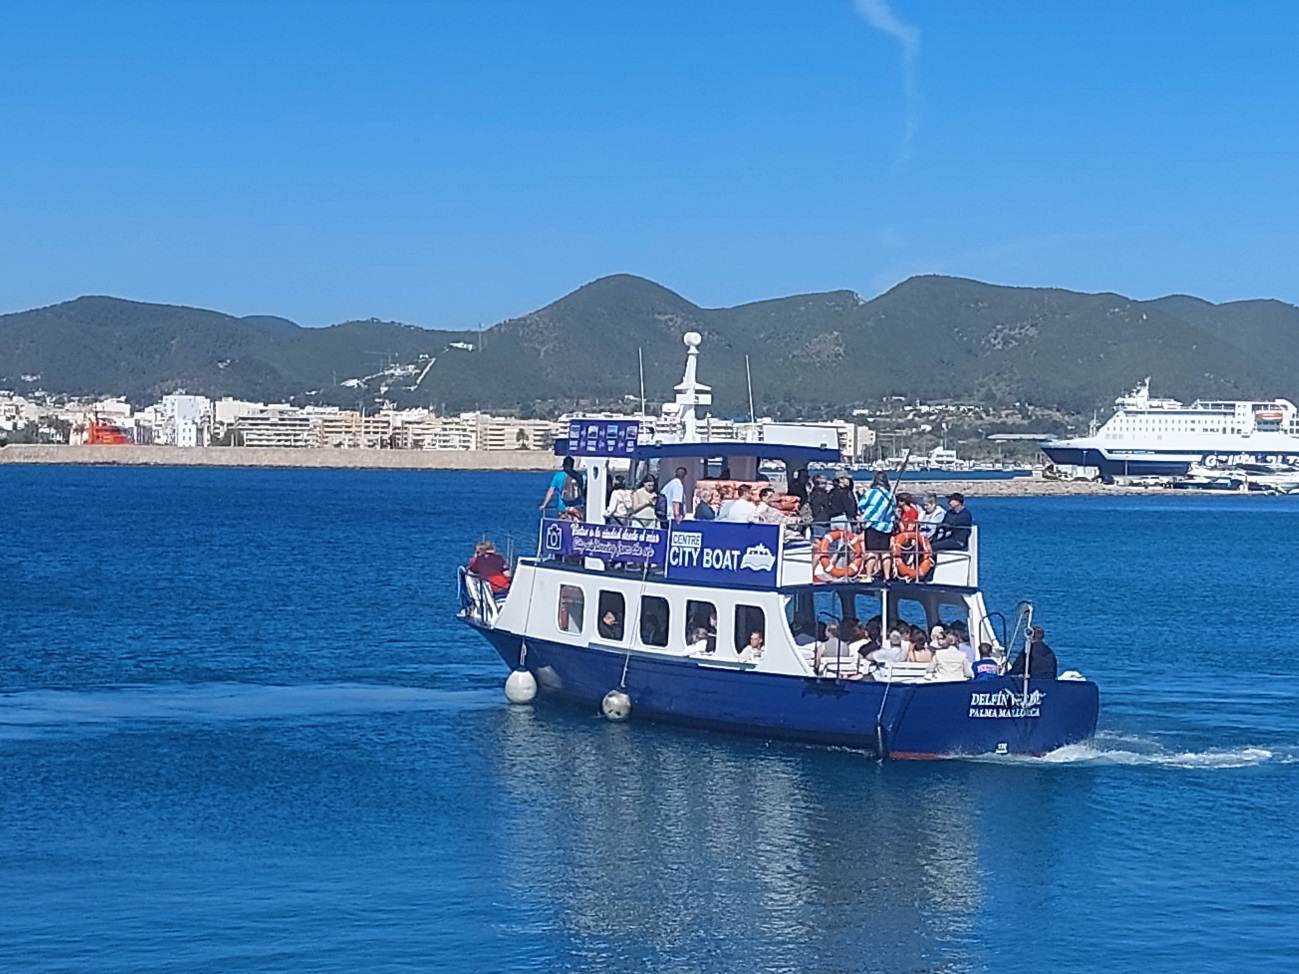 19.000 Kreuzfahrtpassagiere haben in drei Monaten den Seetransportdienst City Boat im Hafen von Eivissa genutzt